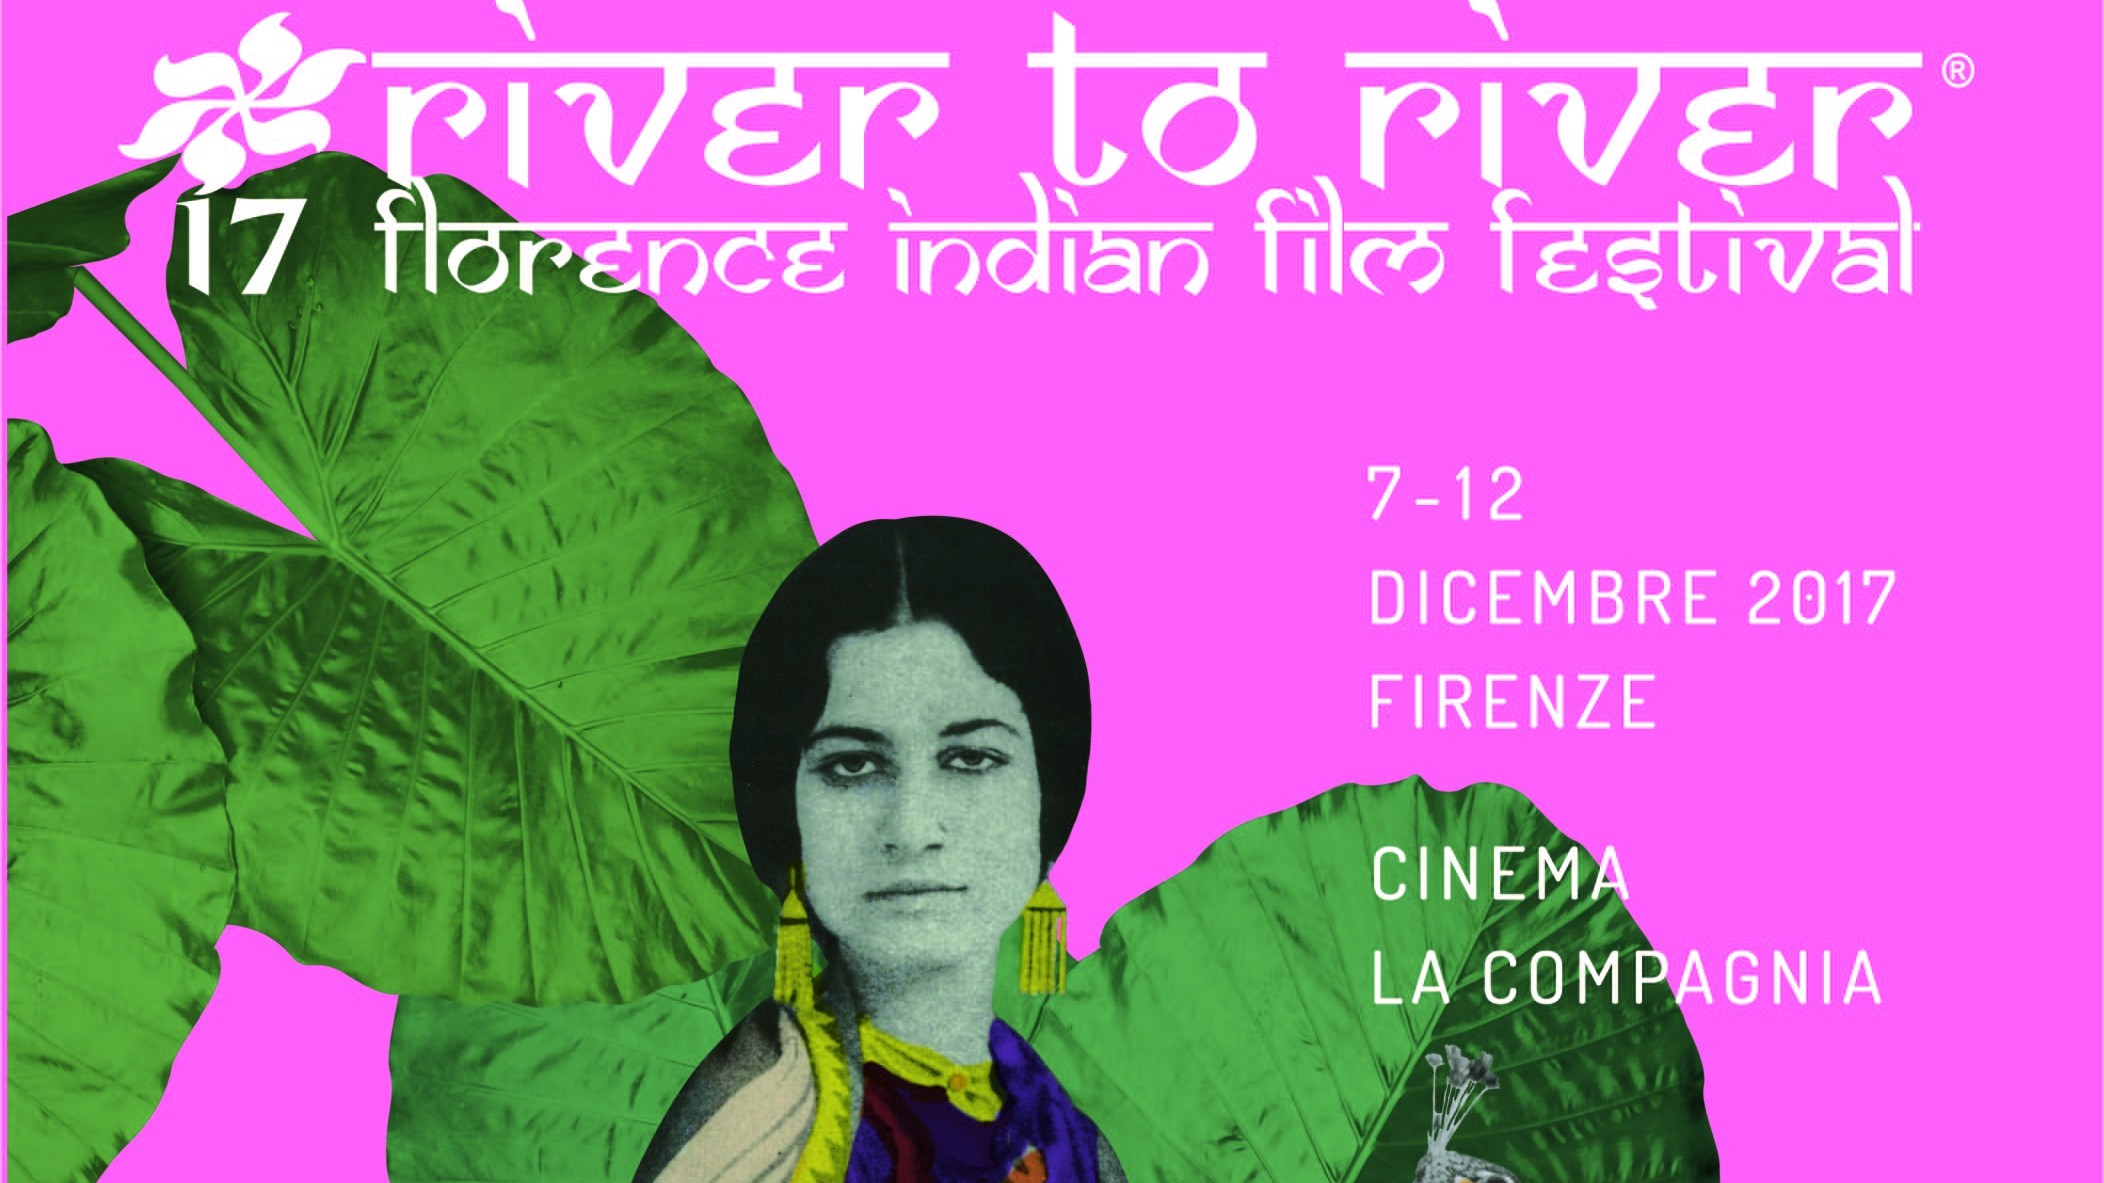 Firenze, River to River Indian Film Festival: i protagonisti sono la donna e i diritti LGBT